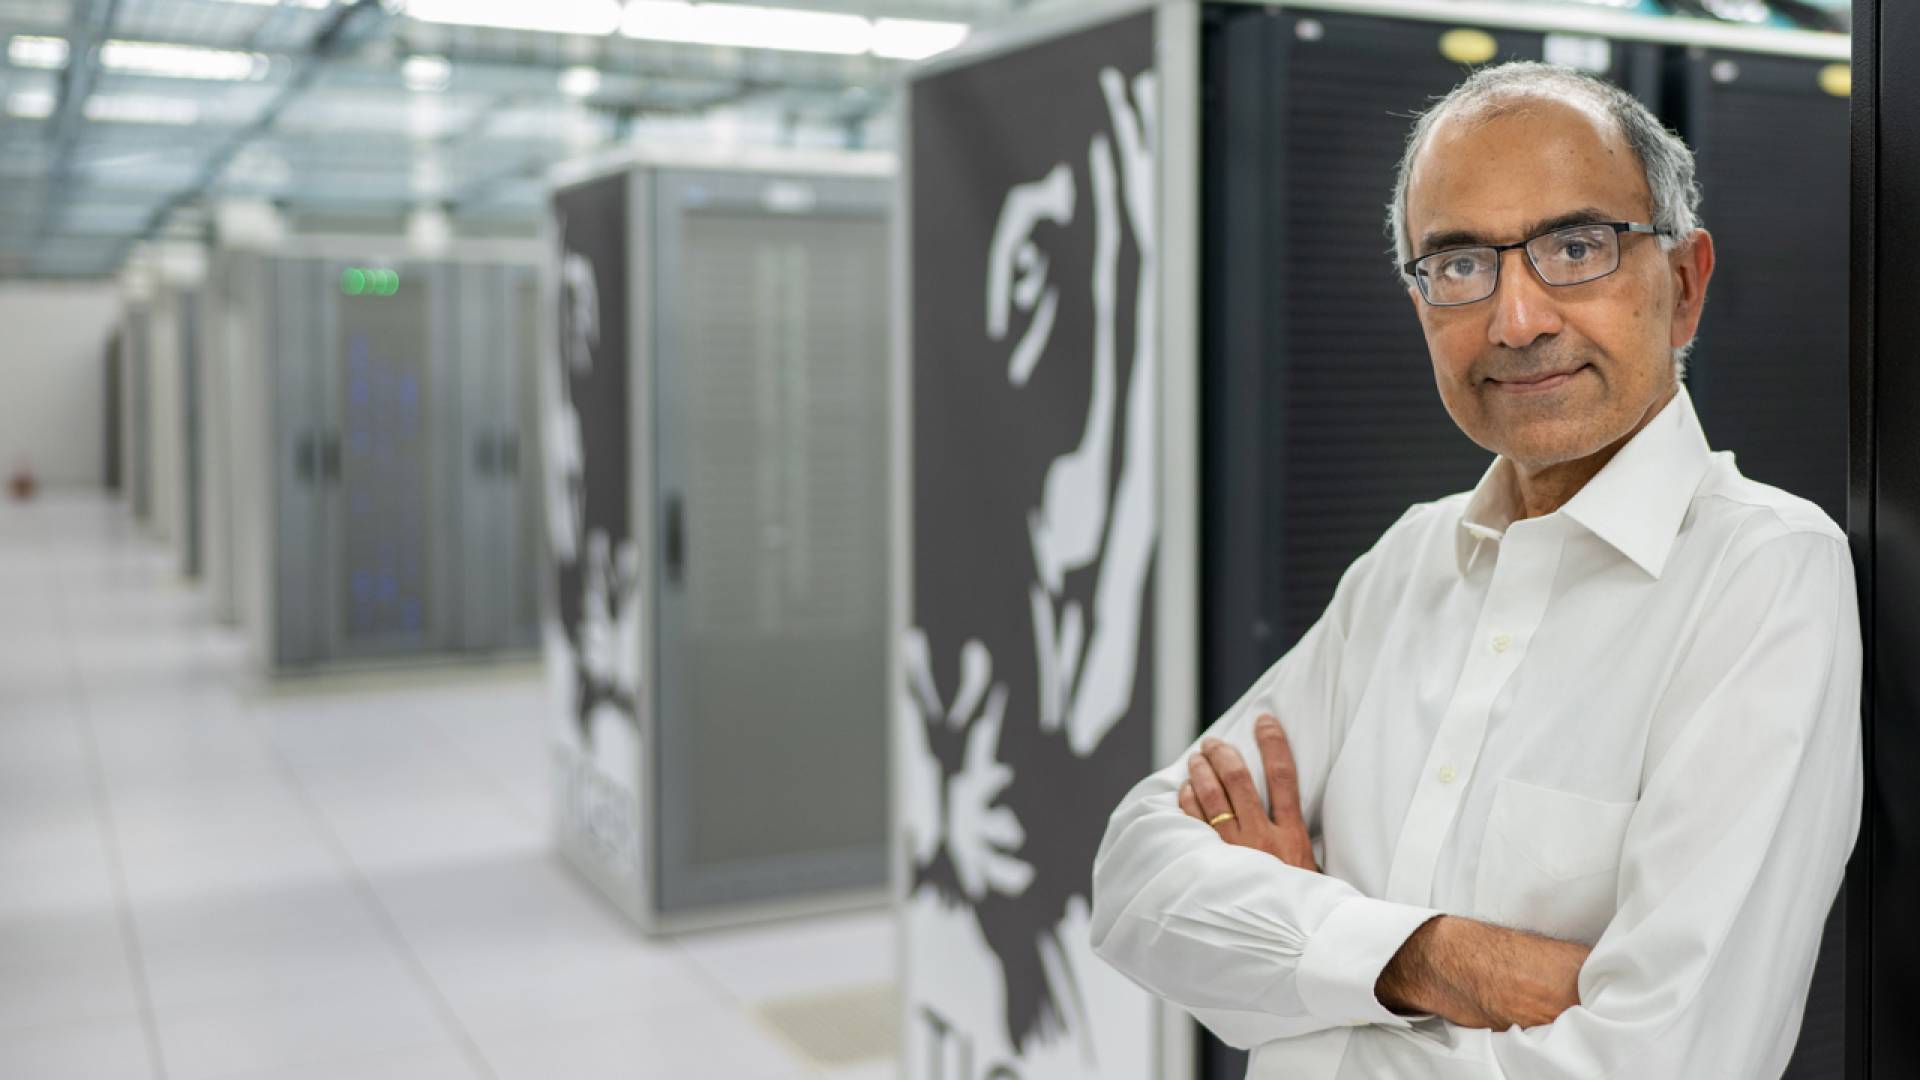 Sanjeev Arora at Princeton's High-Performance Computing Research Center (